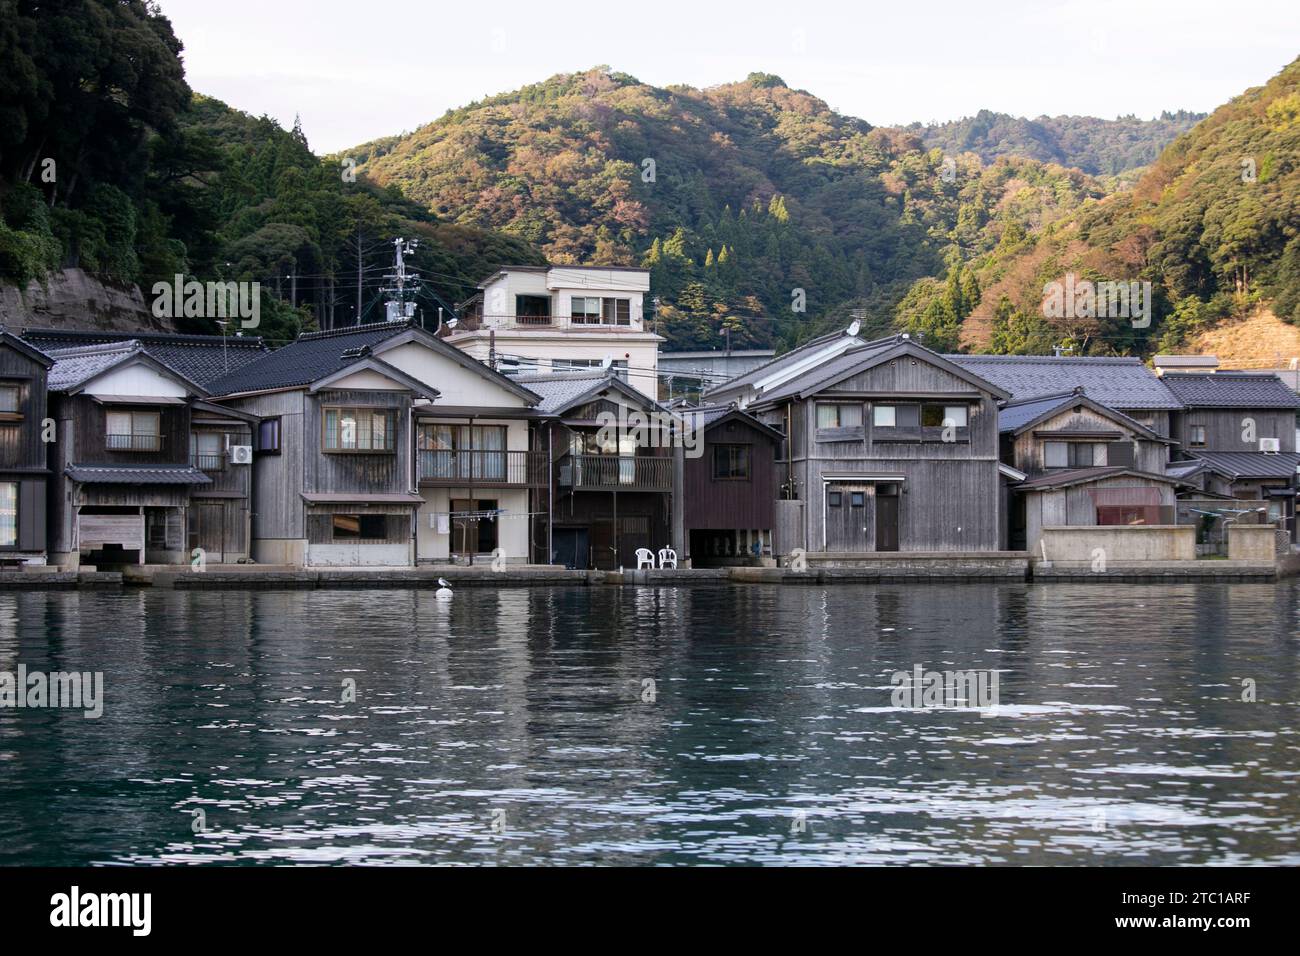 Splendido villaggio di pescatori di Ine, a nord di Kyoto. Funaya o case in barca sono tradizionali case in legno costruite sulla riva del mare. Foto Stock